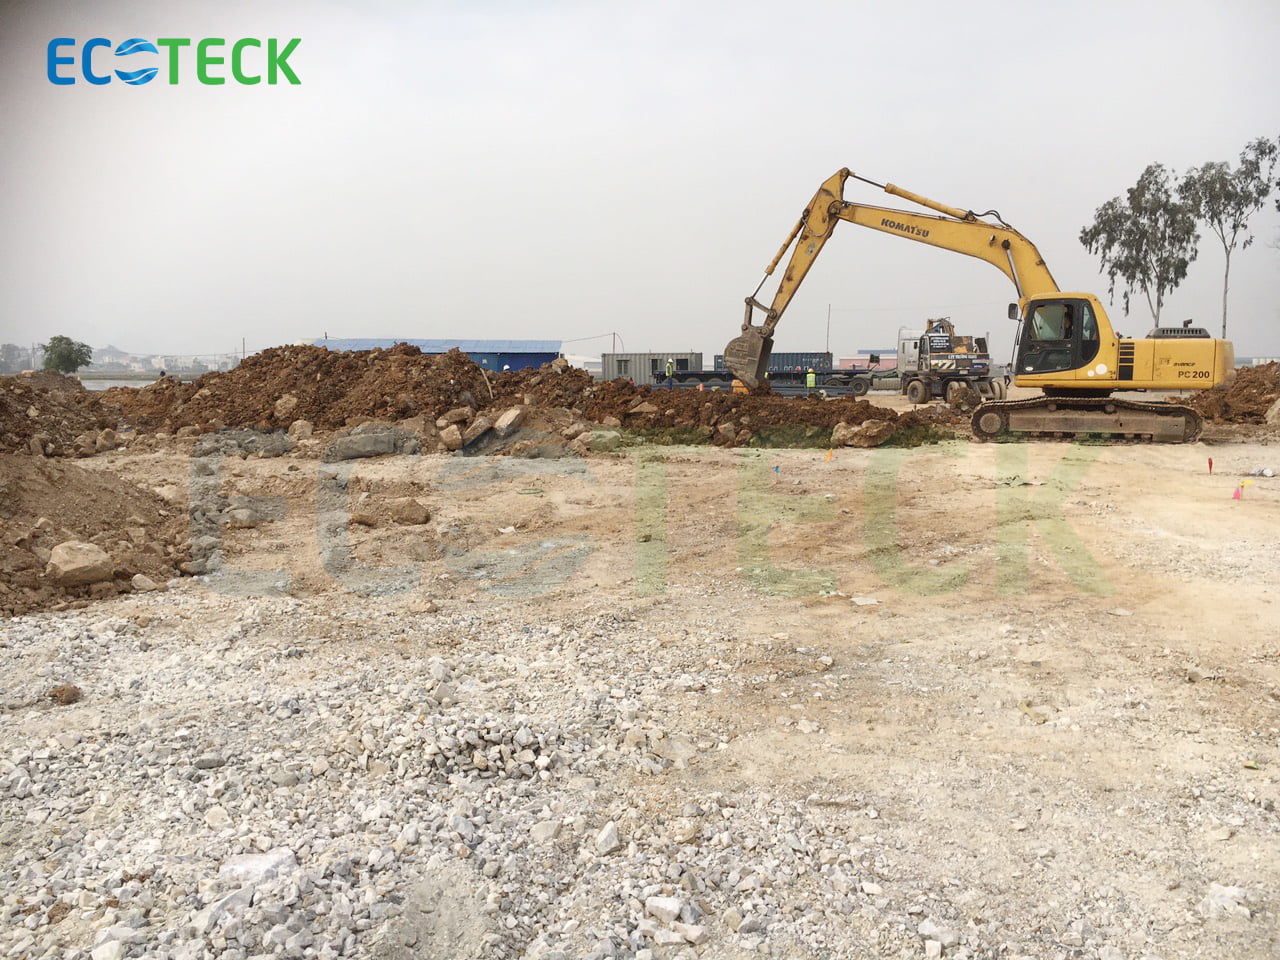 công tác đào đất, cắt đầu cọc BXL, định vị nhà điều hành, nhà phục trợ và xây dựng công trình tạm cho trạm xử lý nước thải KCN Thanh Liêm, tỉnh Hà Nam